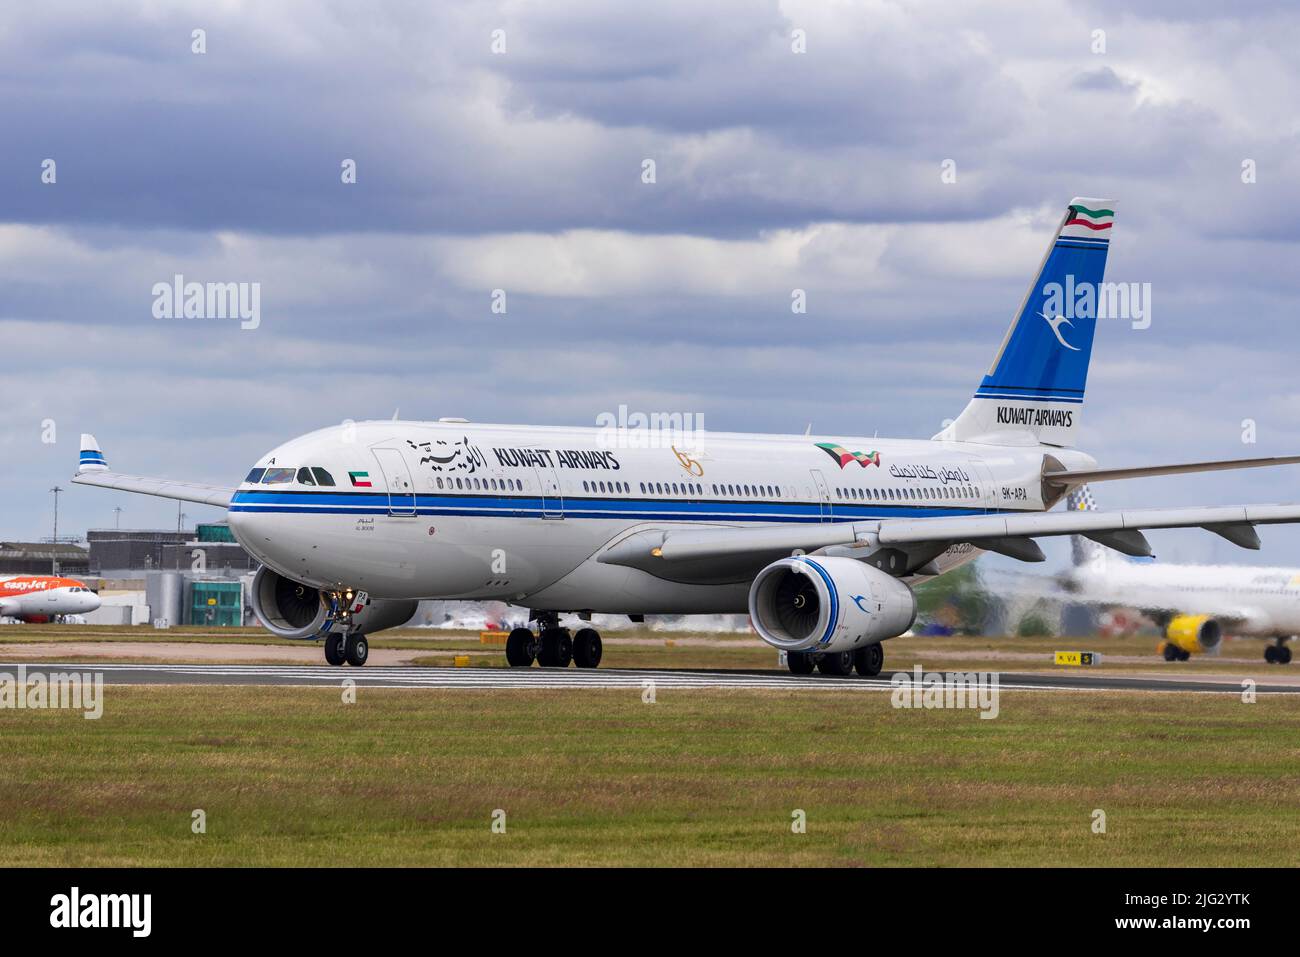 Koweït Airways Airbus A330-243. Al Boom à l'aéroport de Manchester. Banque D'Images